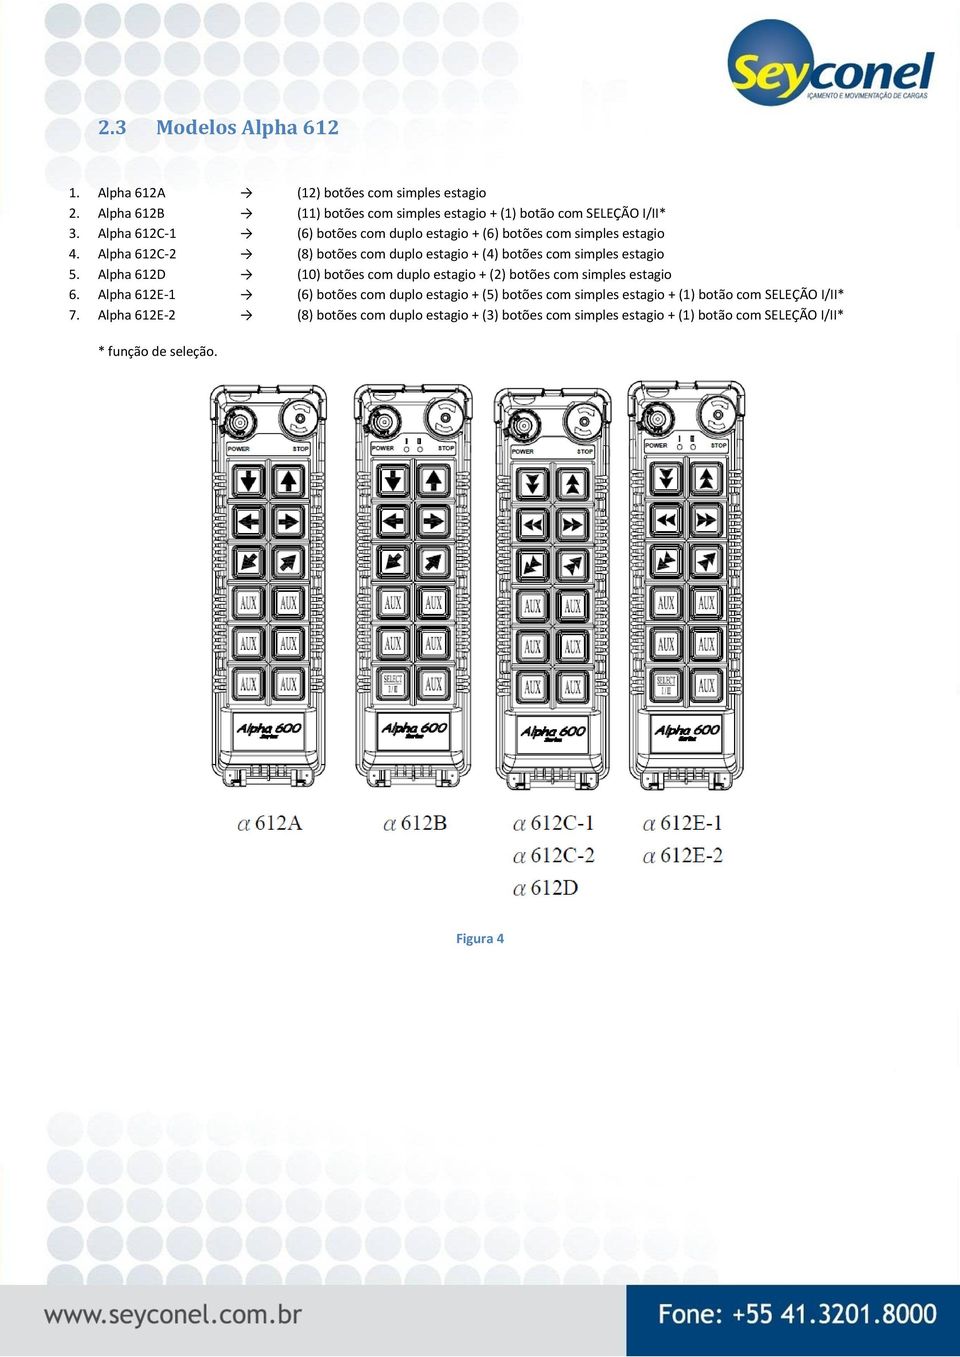 Alpha 612D (10) botões com duplo estagio + (2) botões com simples estagio 6.